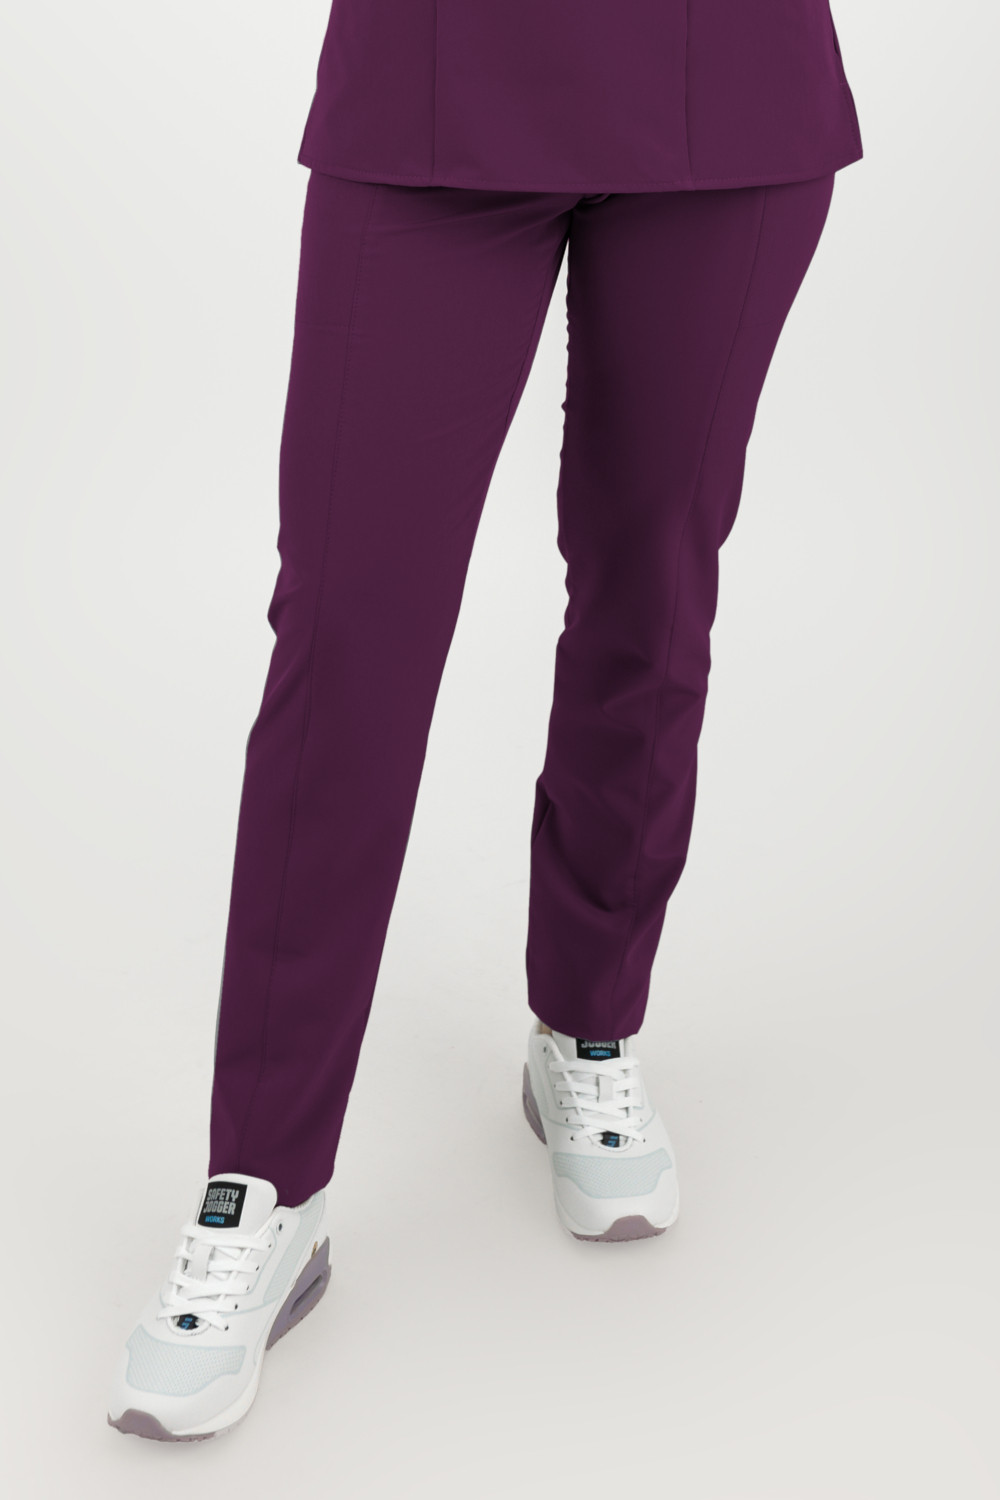 Elastyczne spodnie medyczne damskie / scrubs M-200XP fioletowy